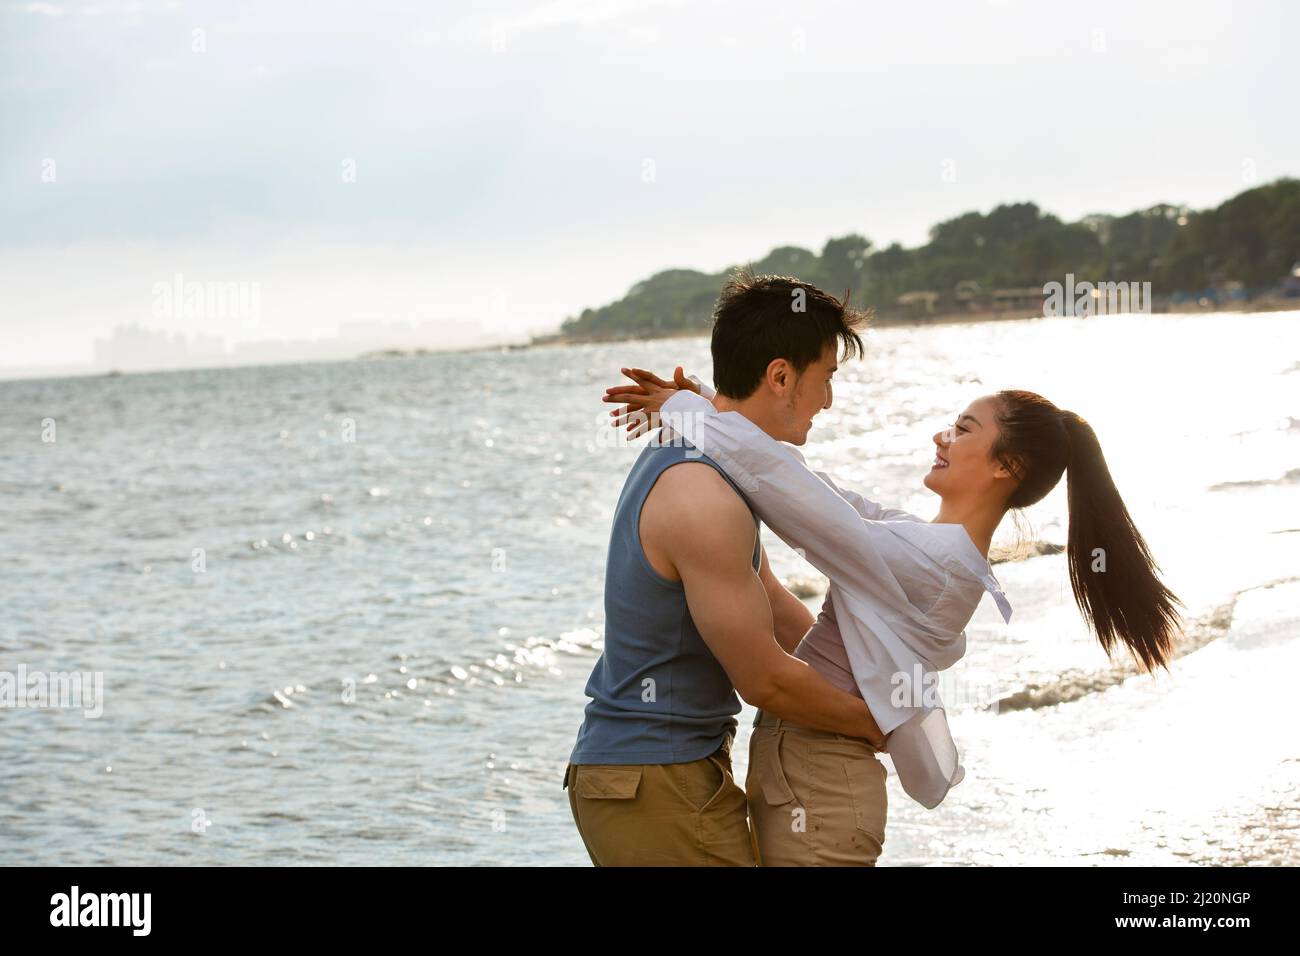 Embrasser un jeune couple pieds nus au bord de la mer - photo de stock Banque D'Images